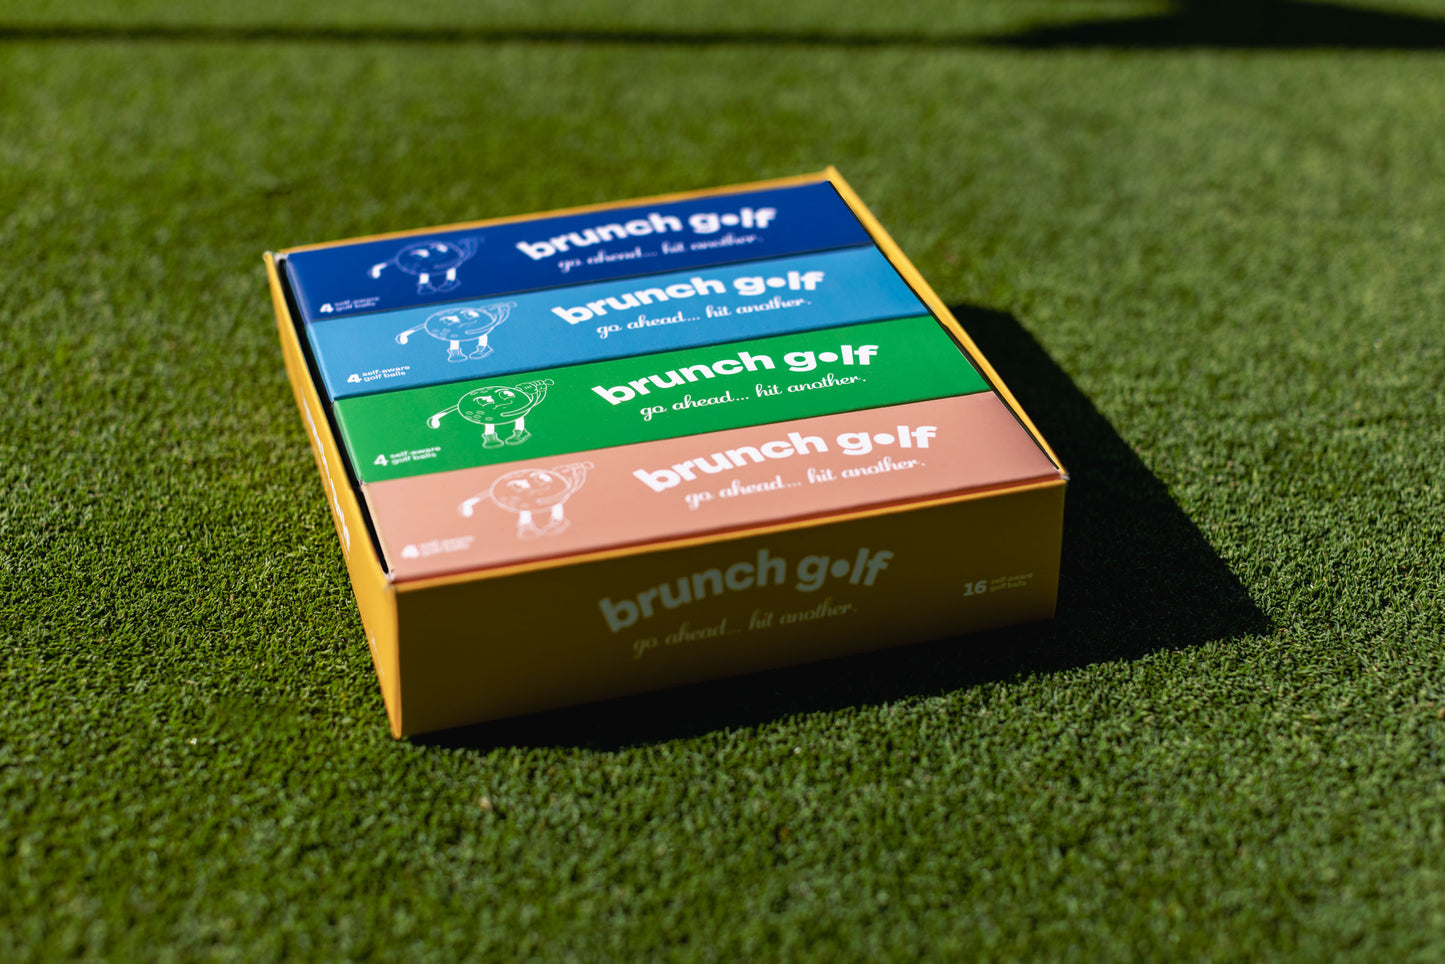 Brunch Golf Ball Case (16 balls)